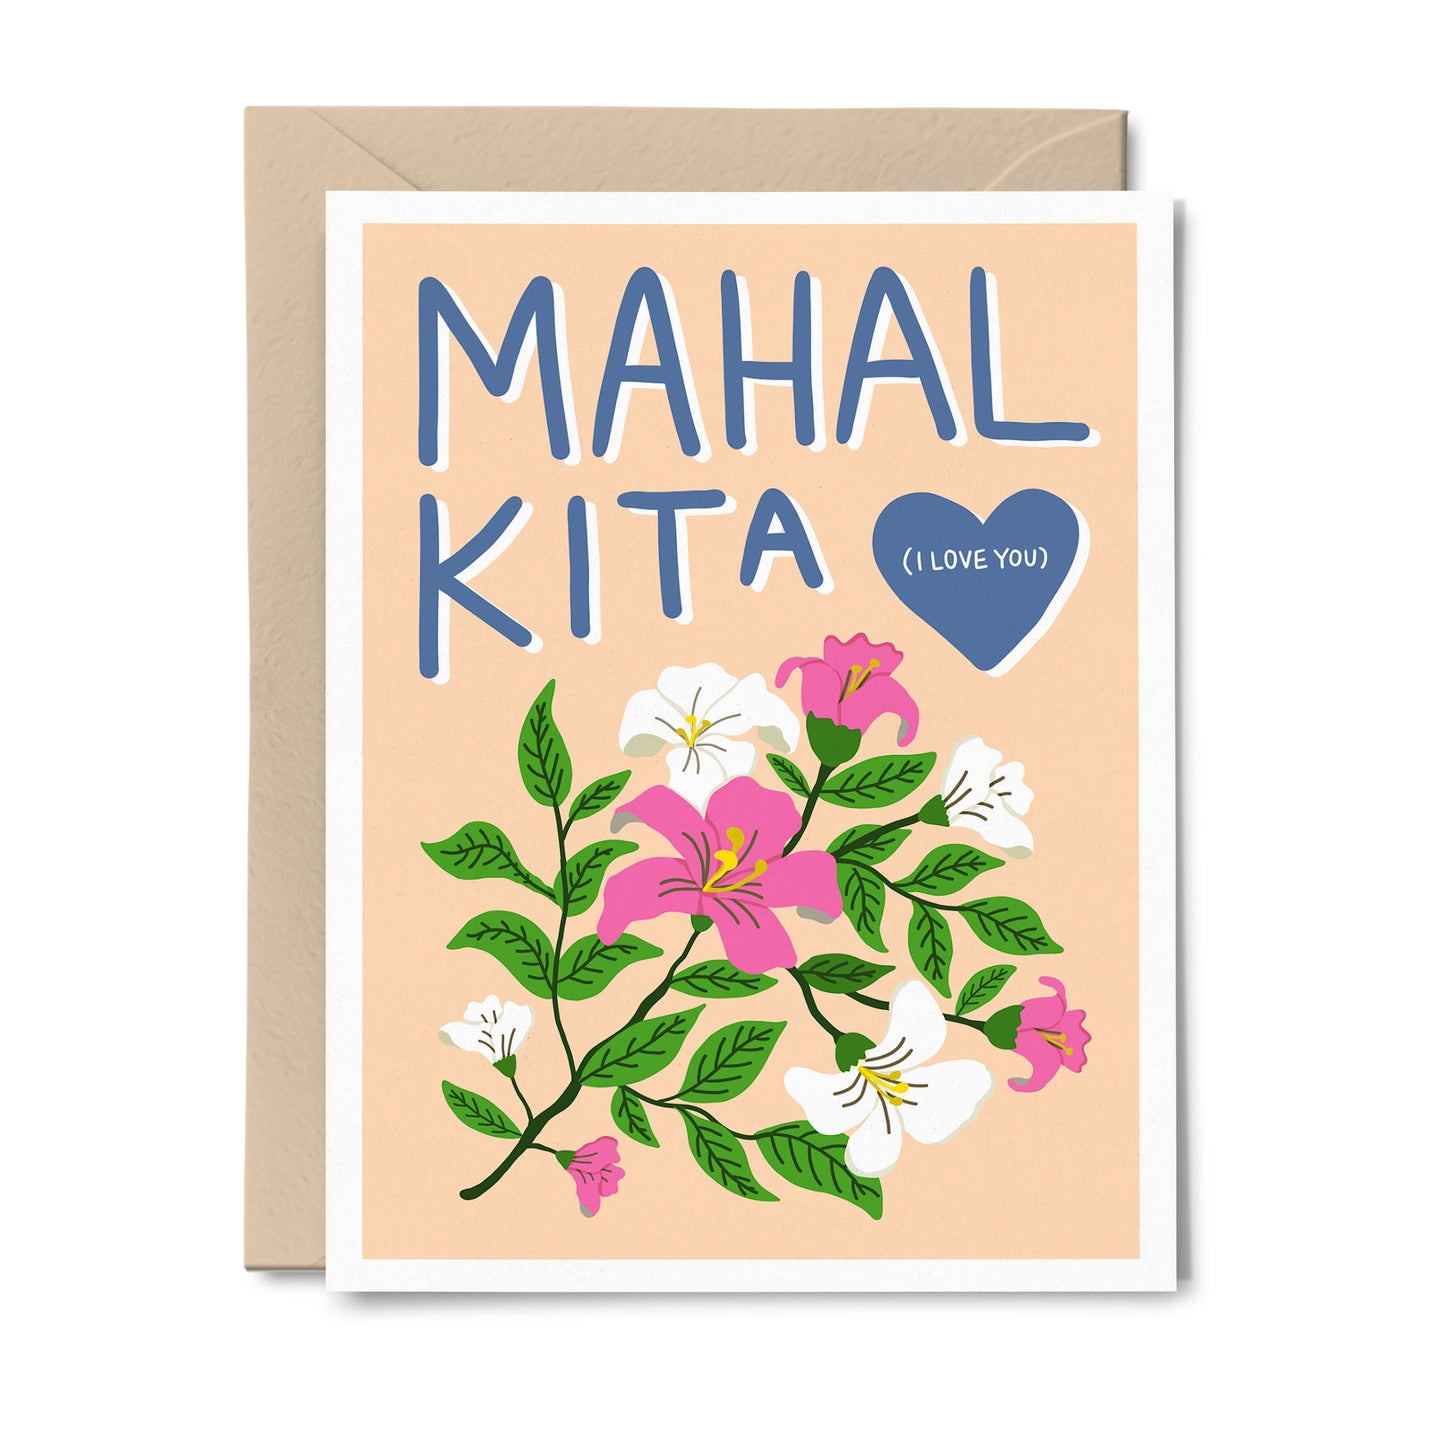 Mahal Kita ("I Love You") Bilingual Tagalog-English Card